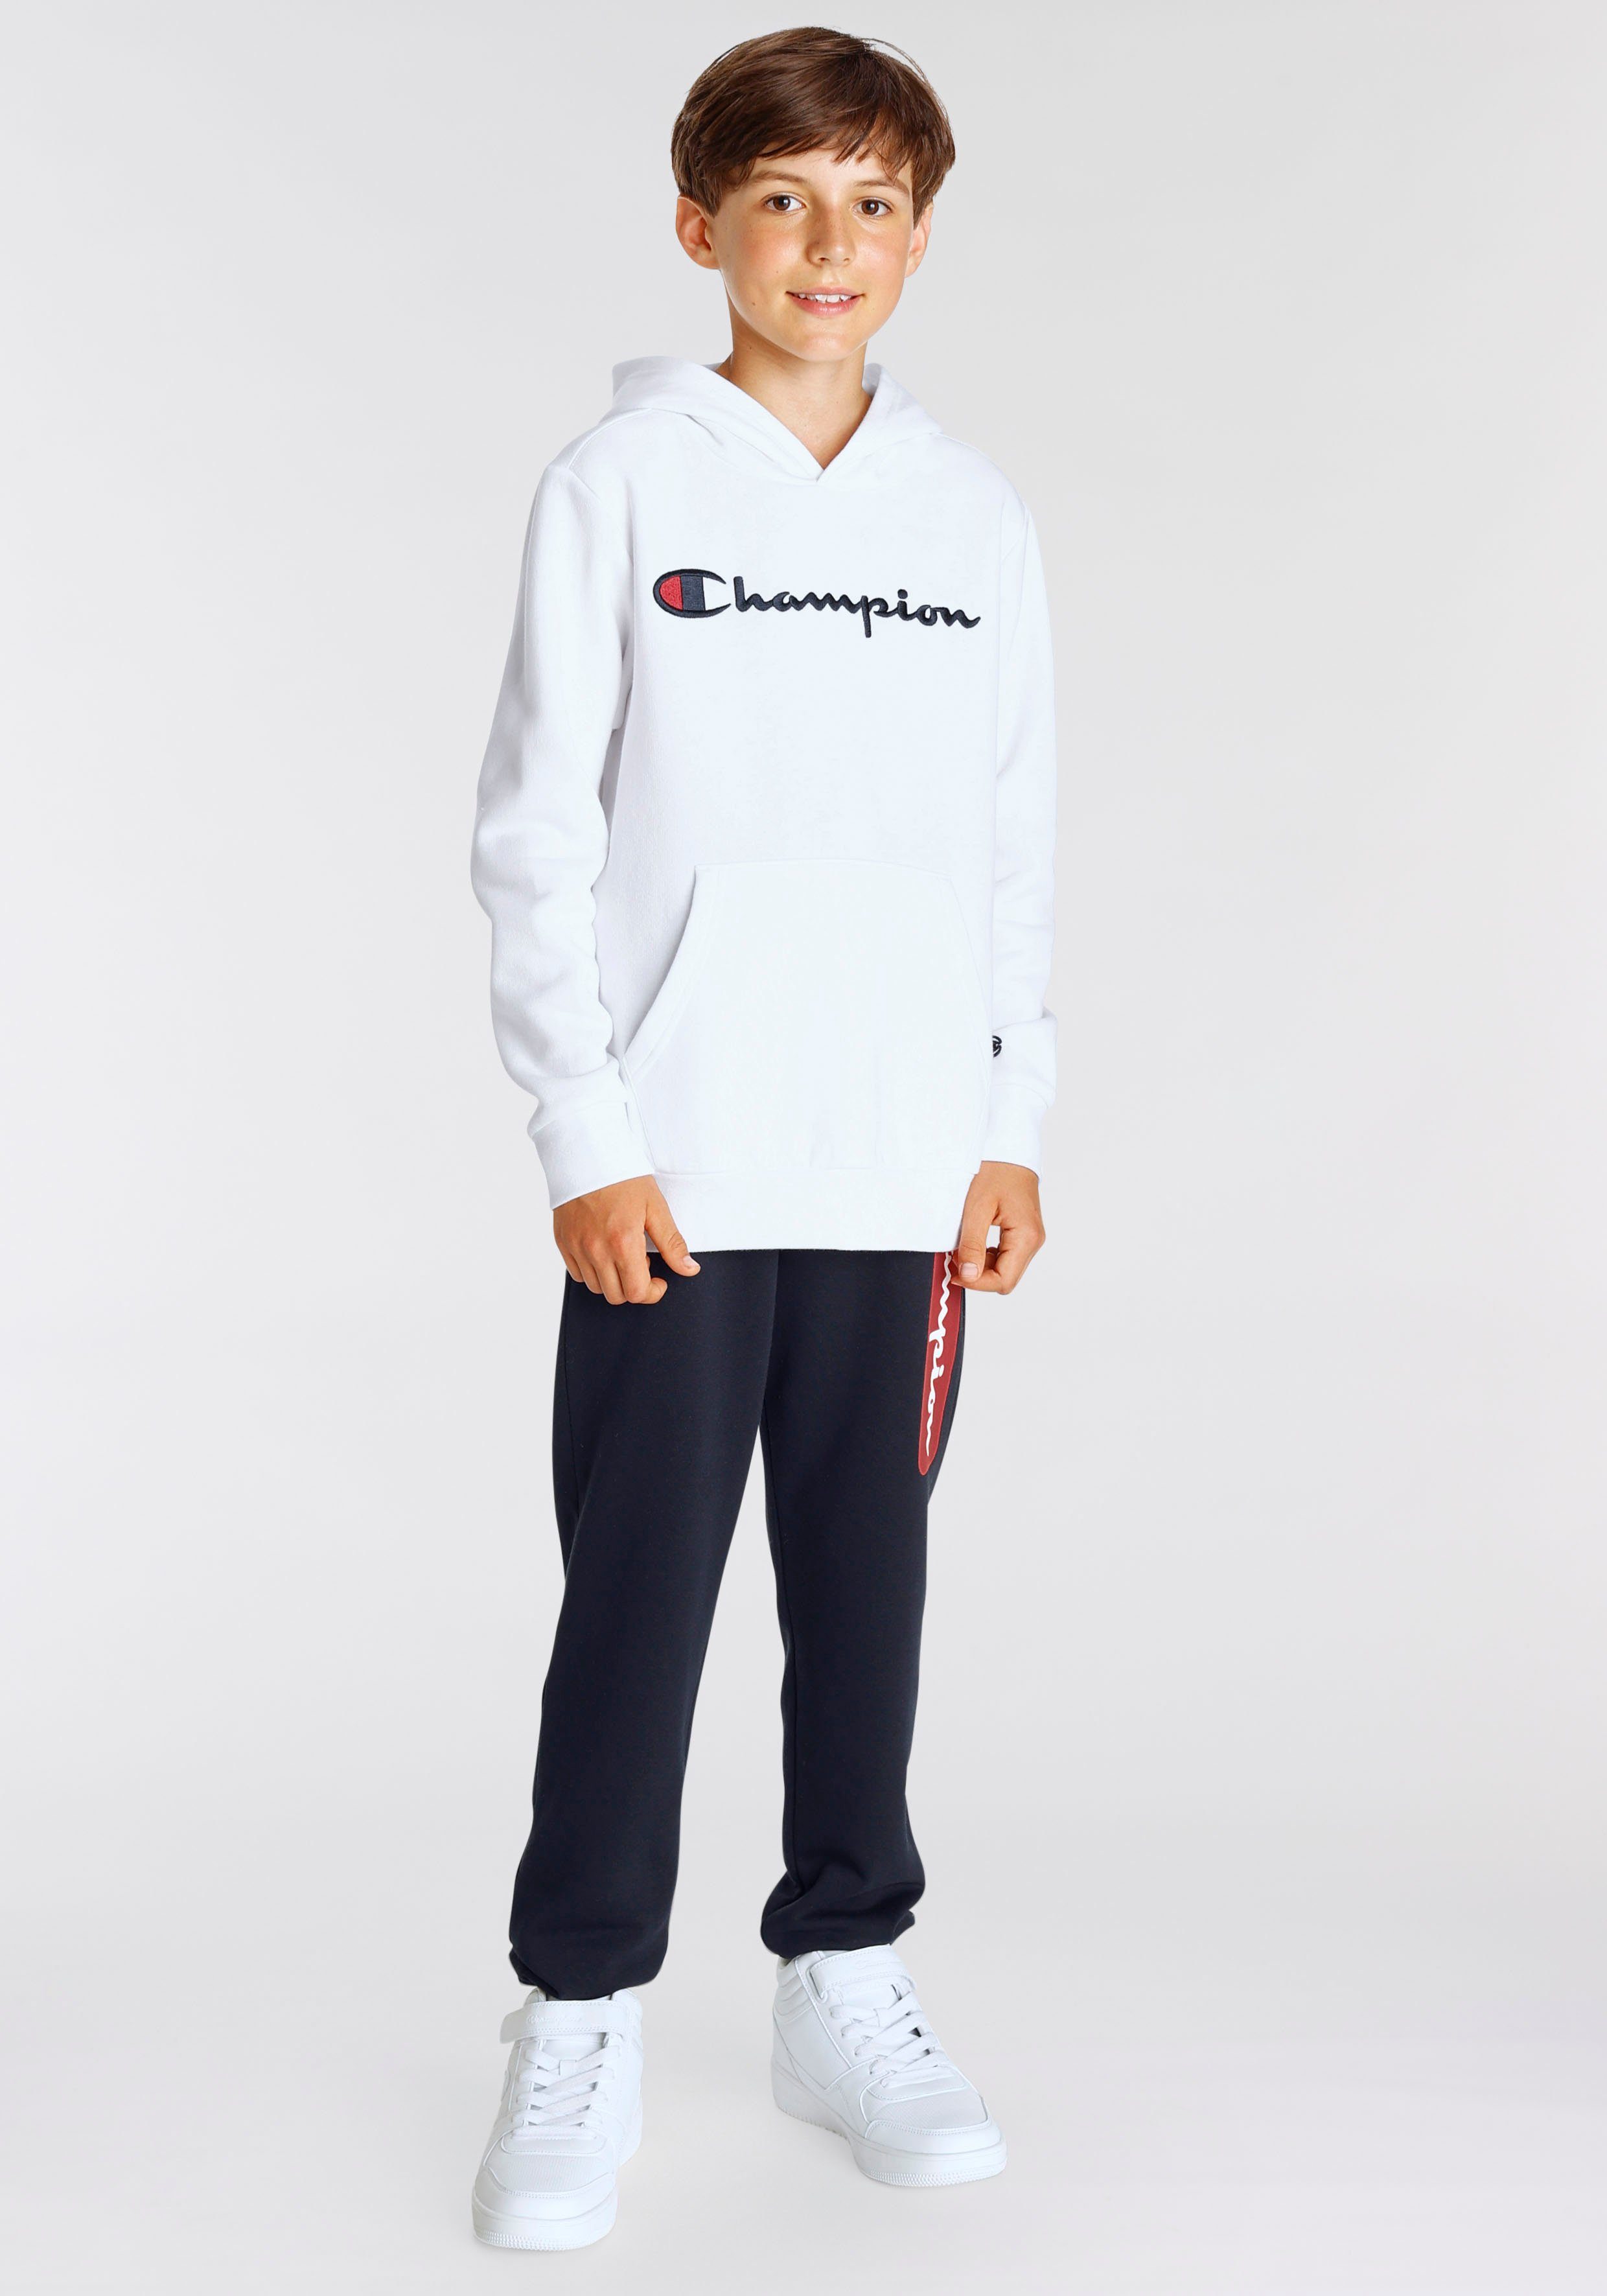 Kinder Champion Hooded weiß Classic Sweatshirt Sweatshirt large - für Logo